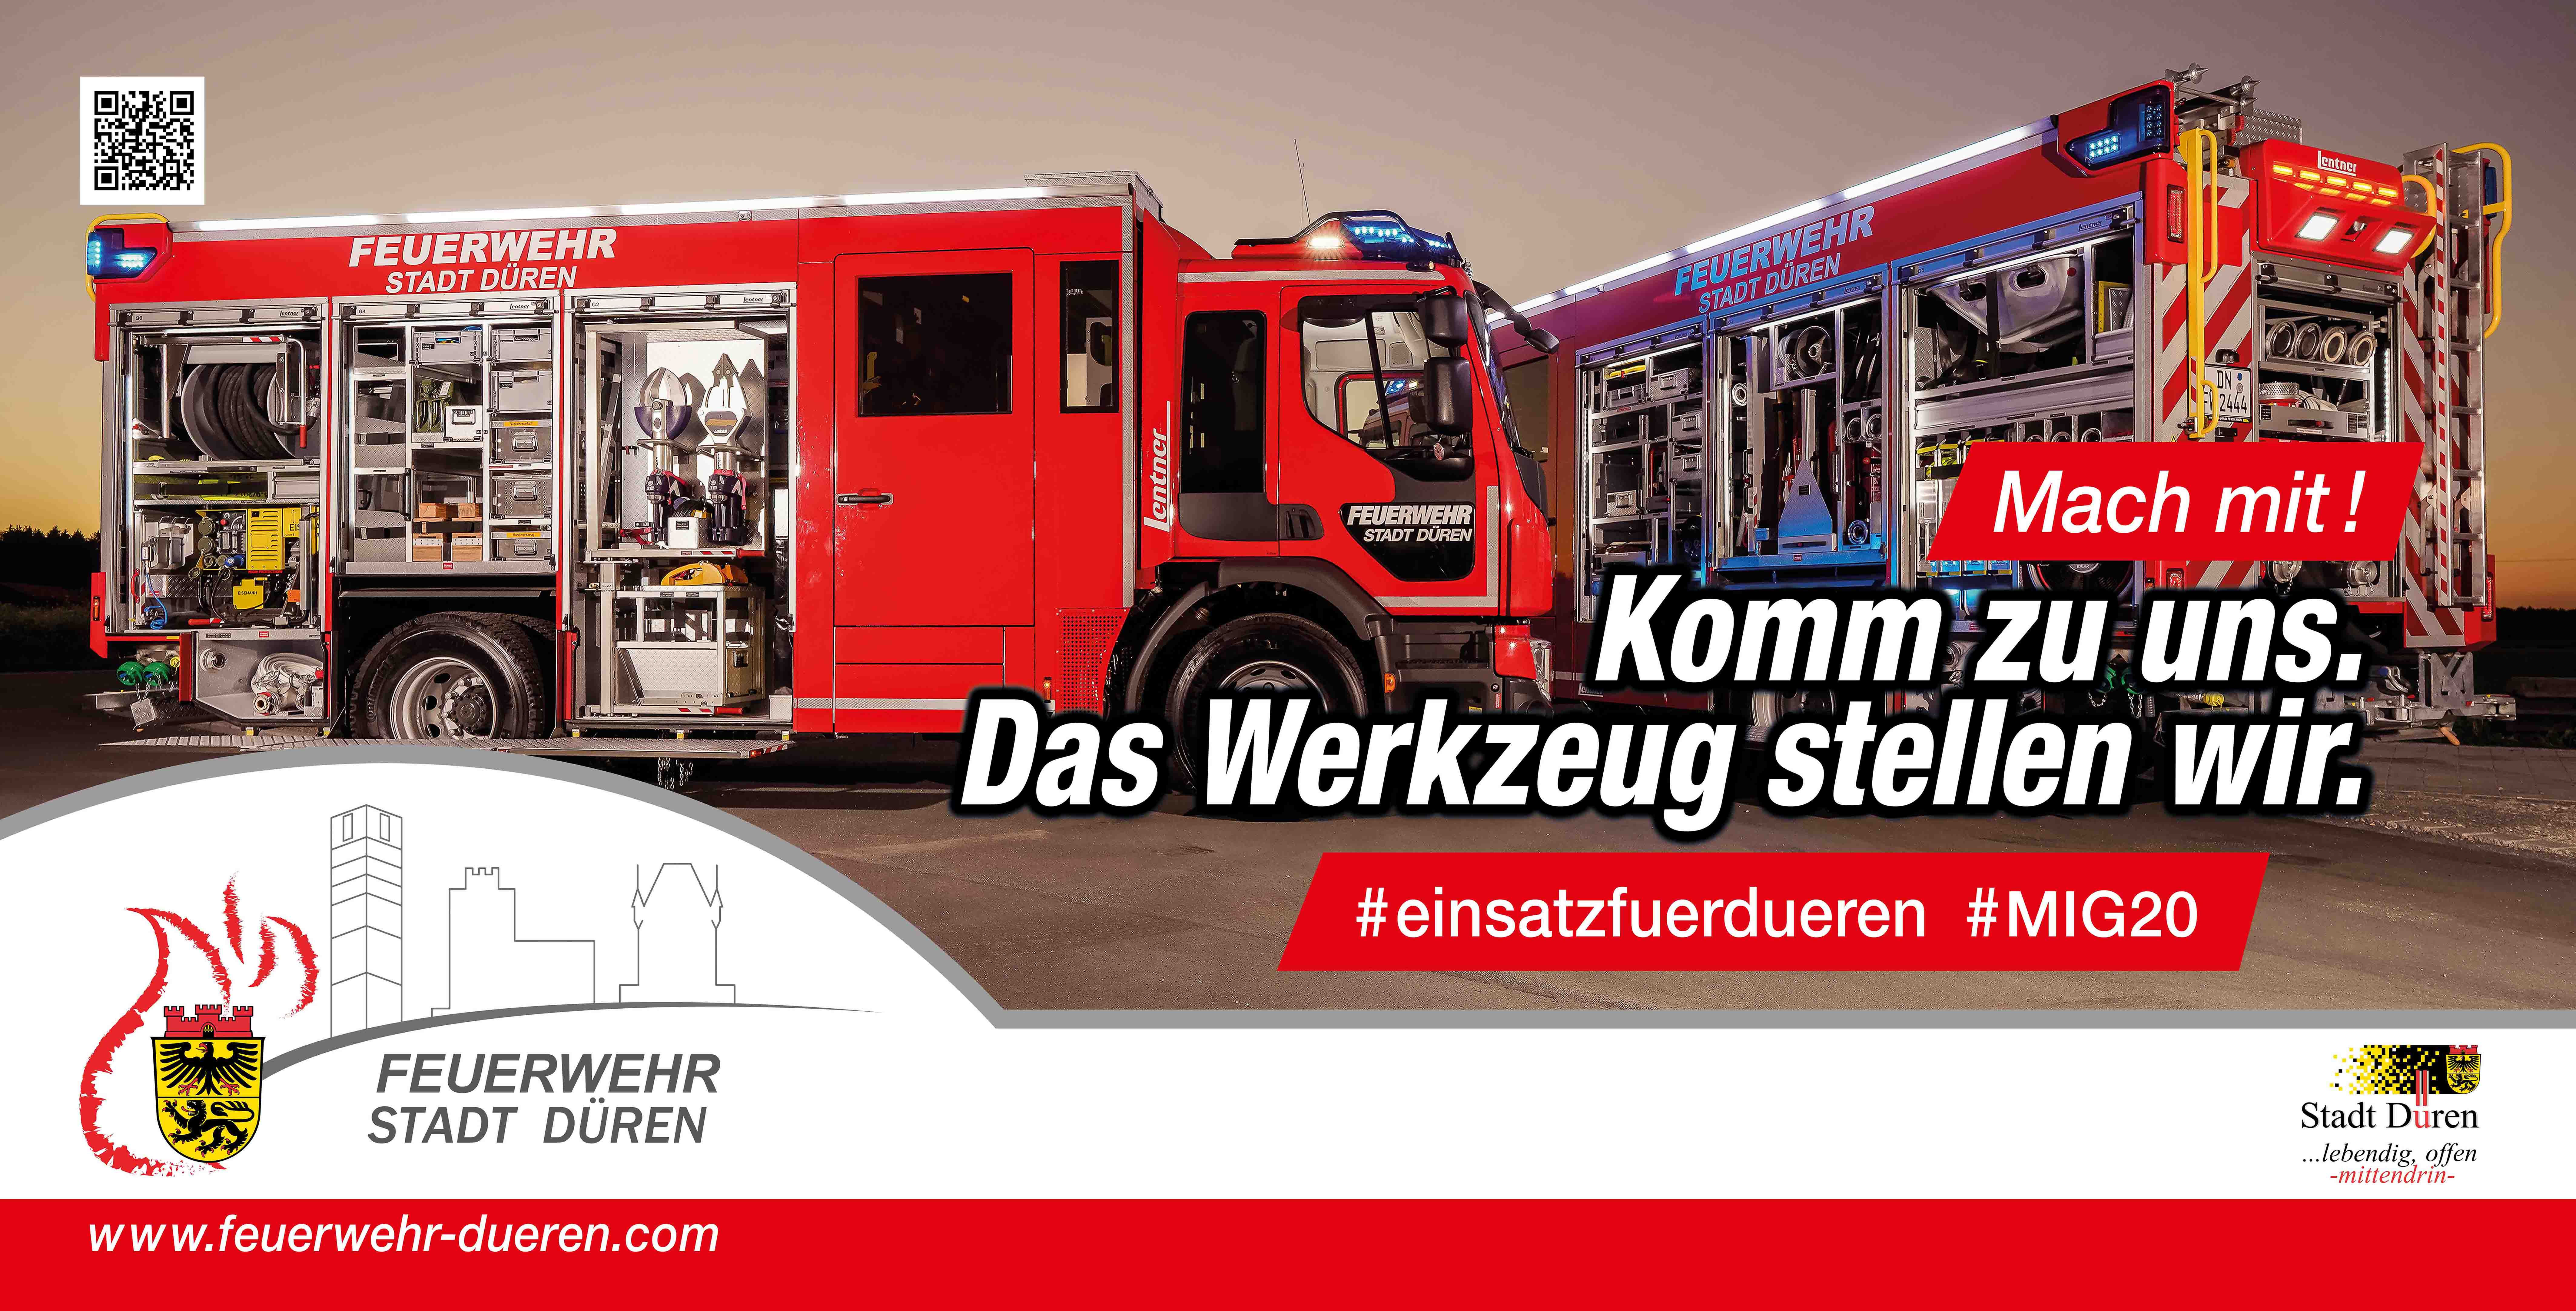 Feuerwehr_DN_Bauzaunbanner_WEB_03.jpg